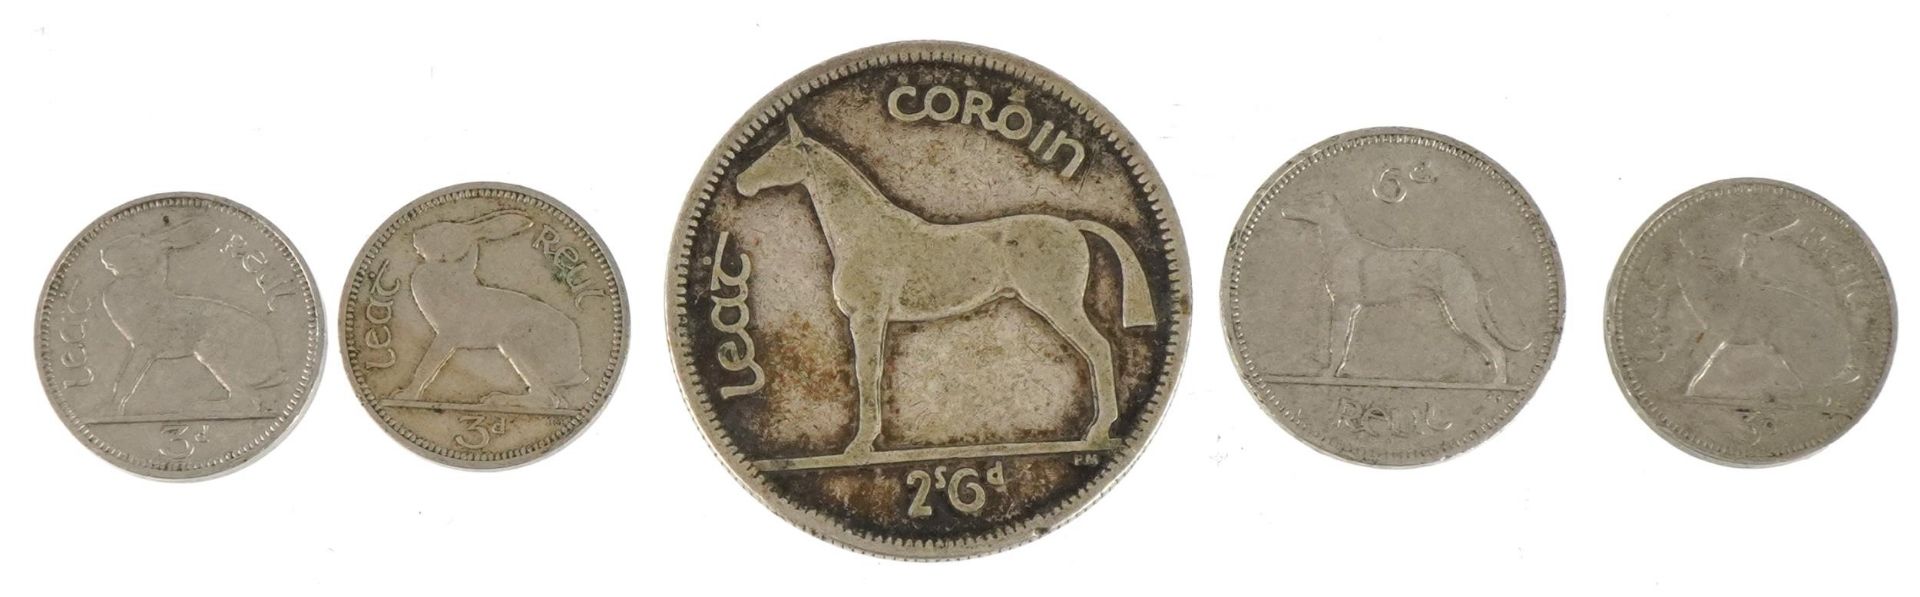 Five various Irish coins